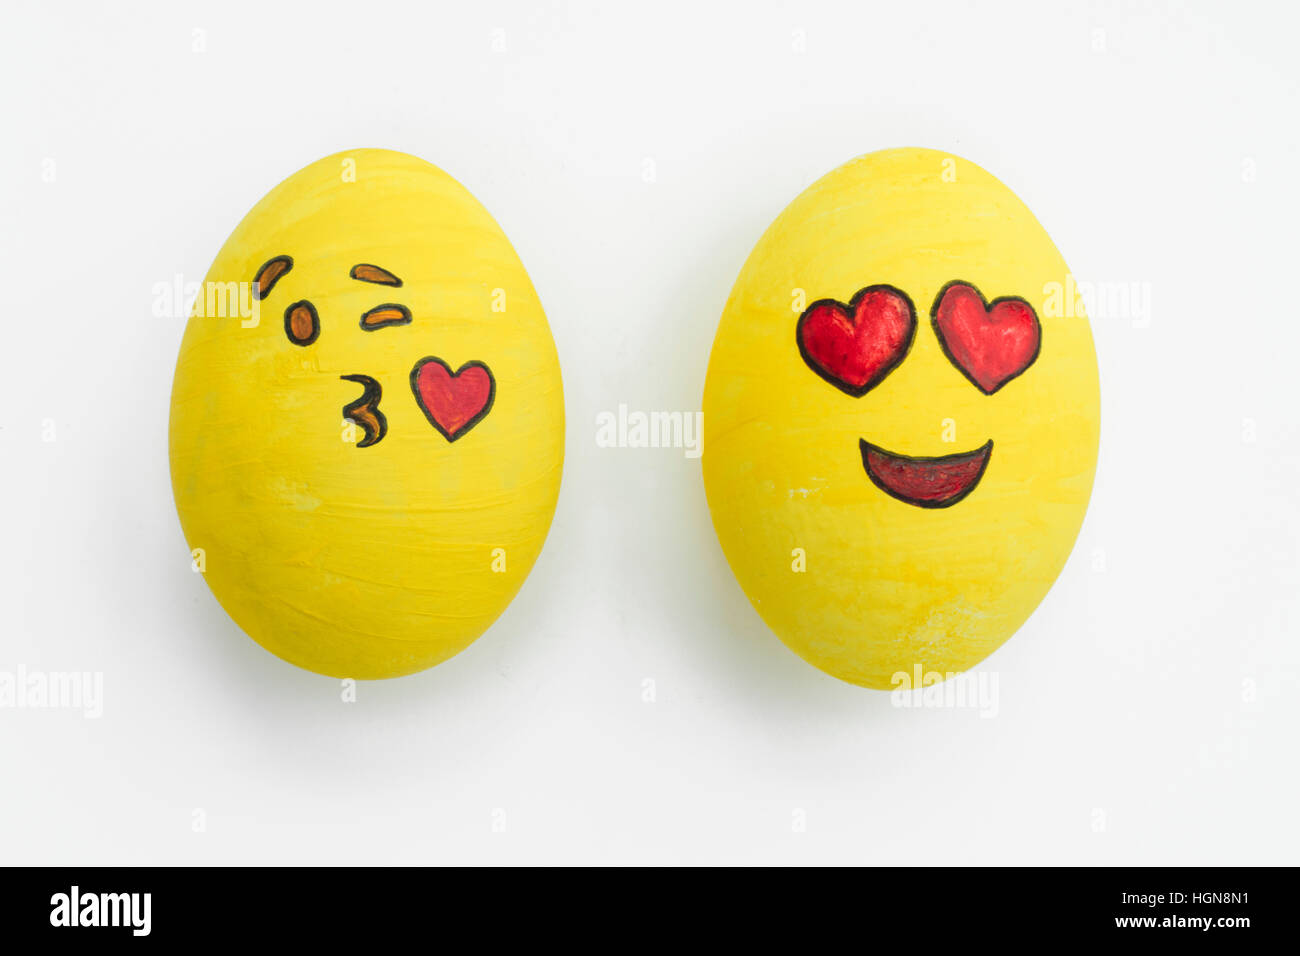 Dipinto gli Emoji uova di pasqua in diversi stati d'animo e le espressioni facciali come il bacio, sorridenti o essendo in amore, in isolati sullo sfondo bianco. Foto Stock